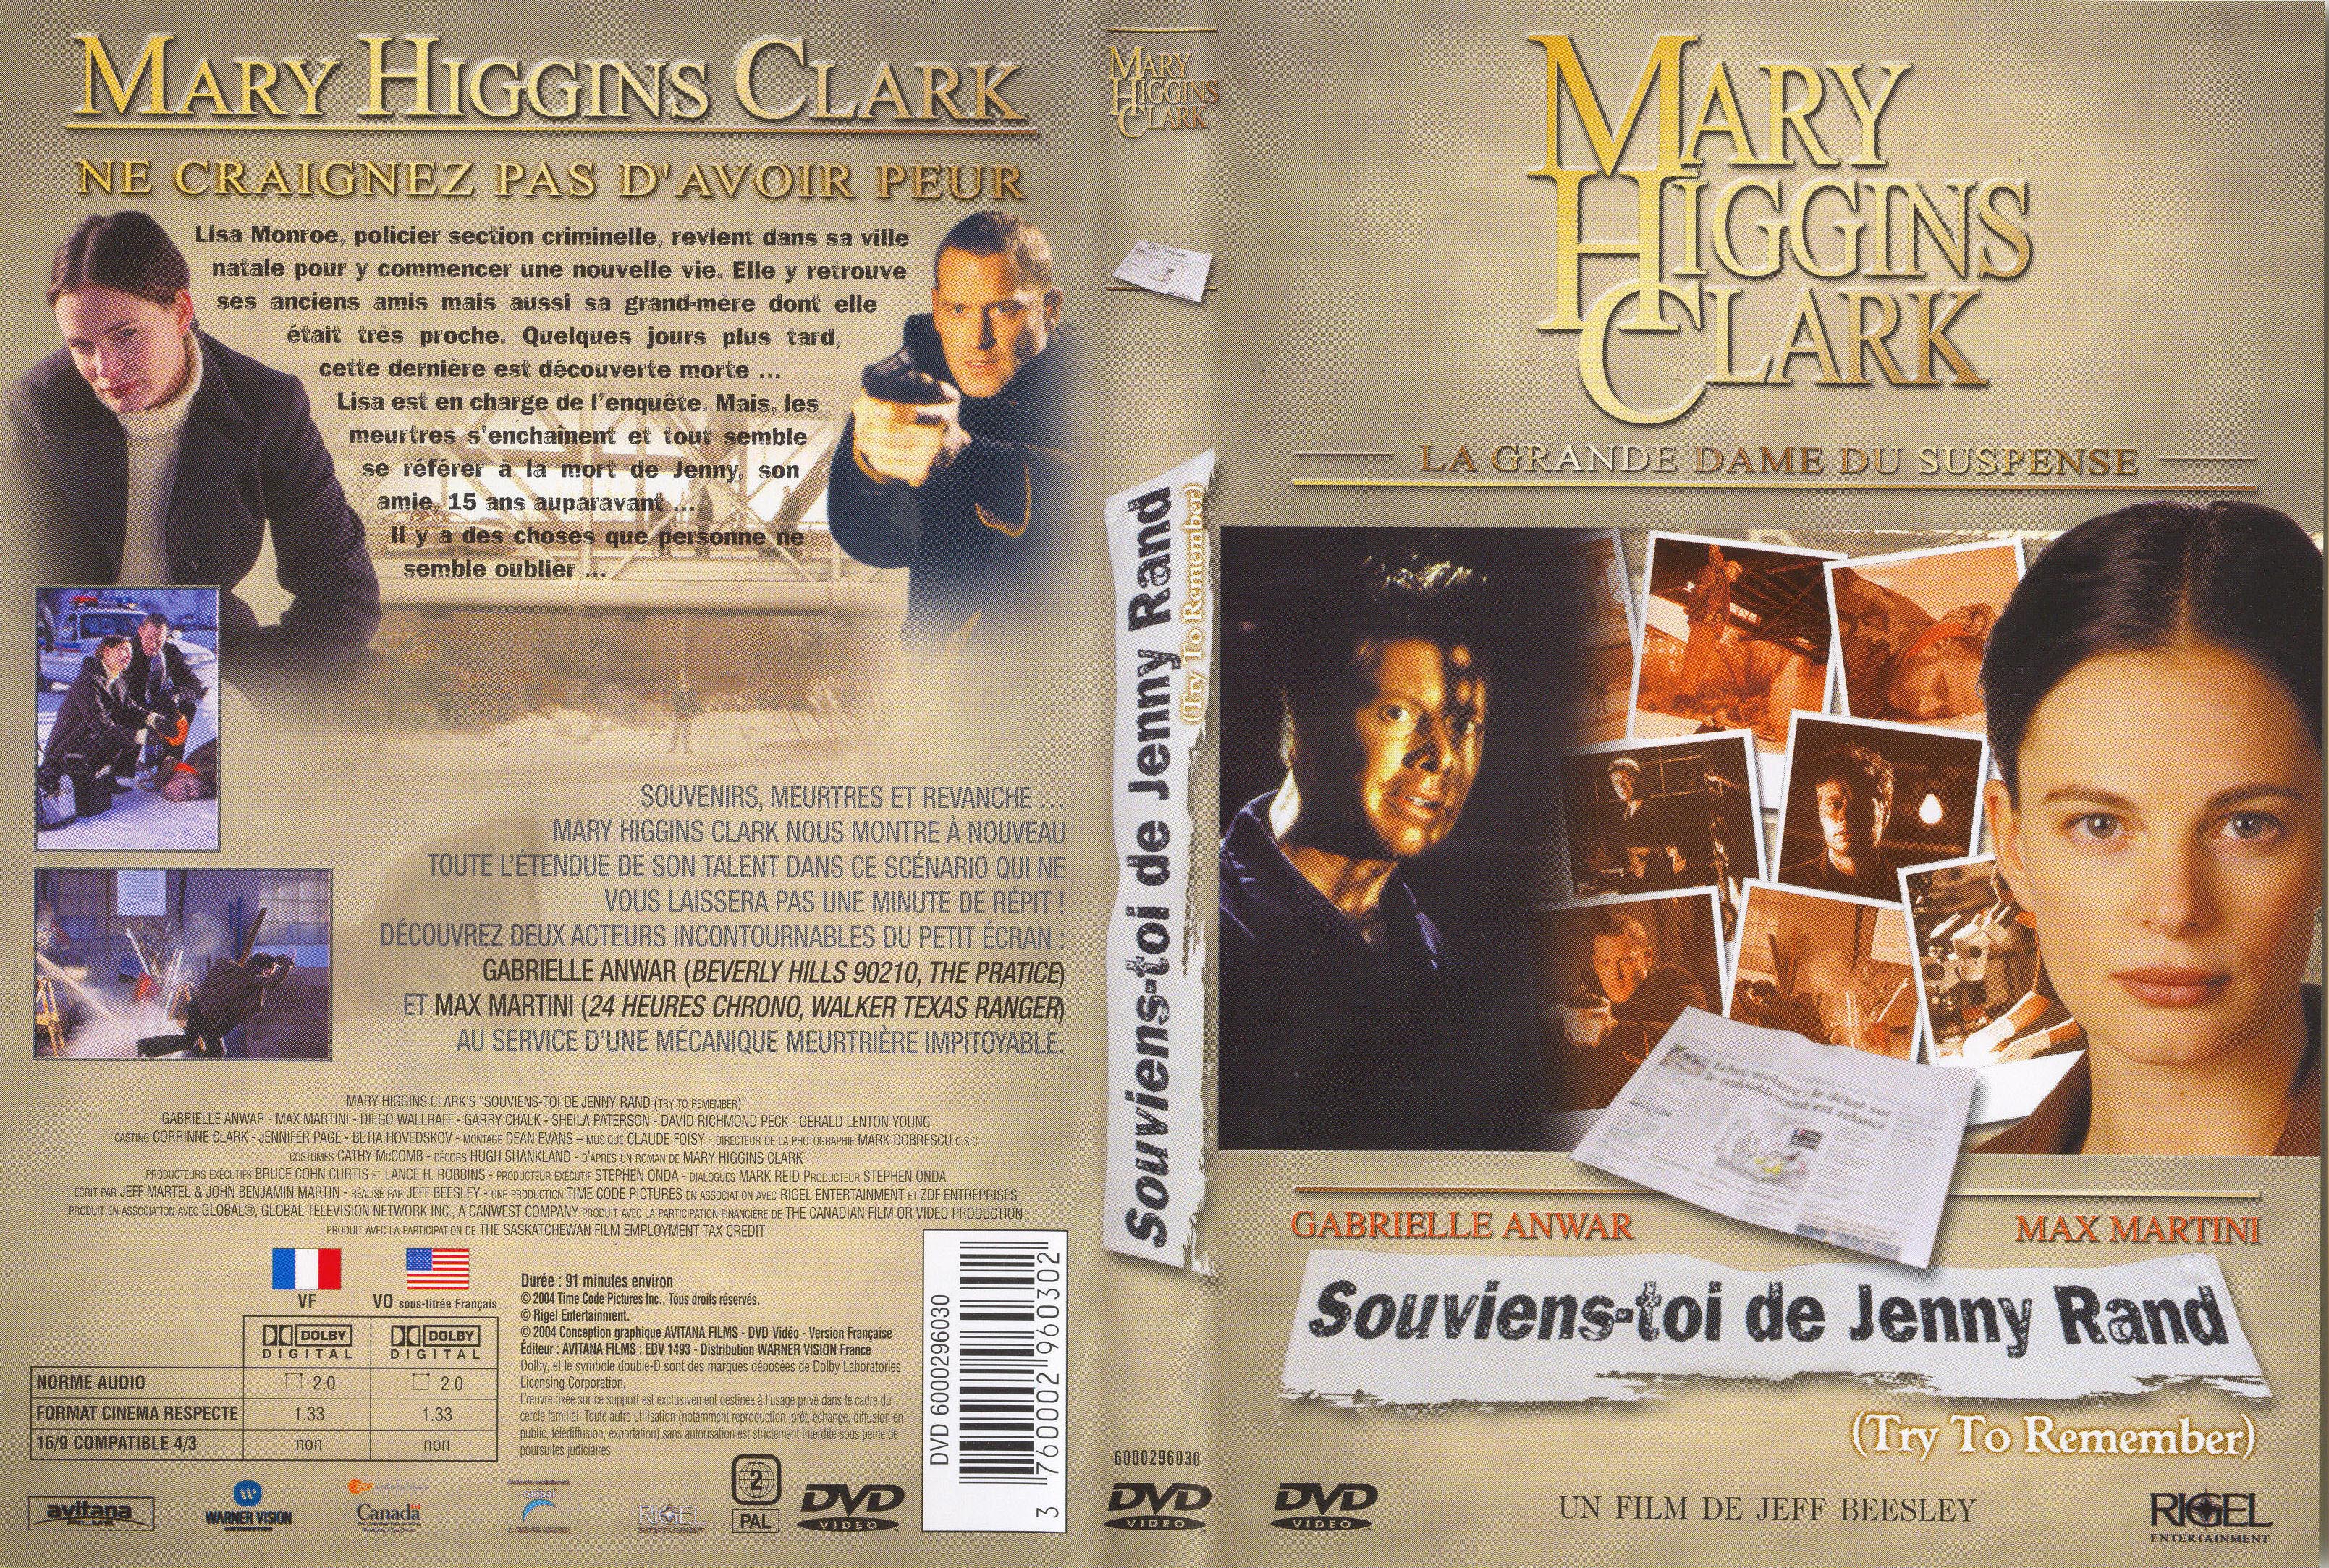 Jaquette DVD de Mary Higgins Clark vol 15 - Souviens toi de Jenny Rand v2 - Cinéma ...